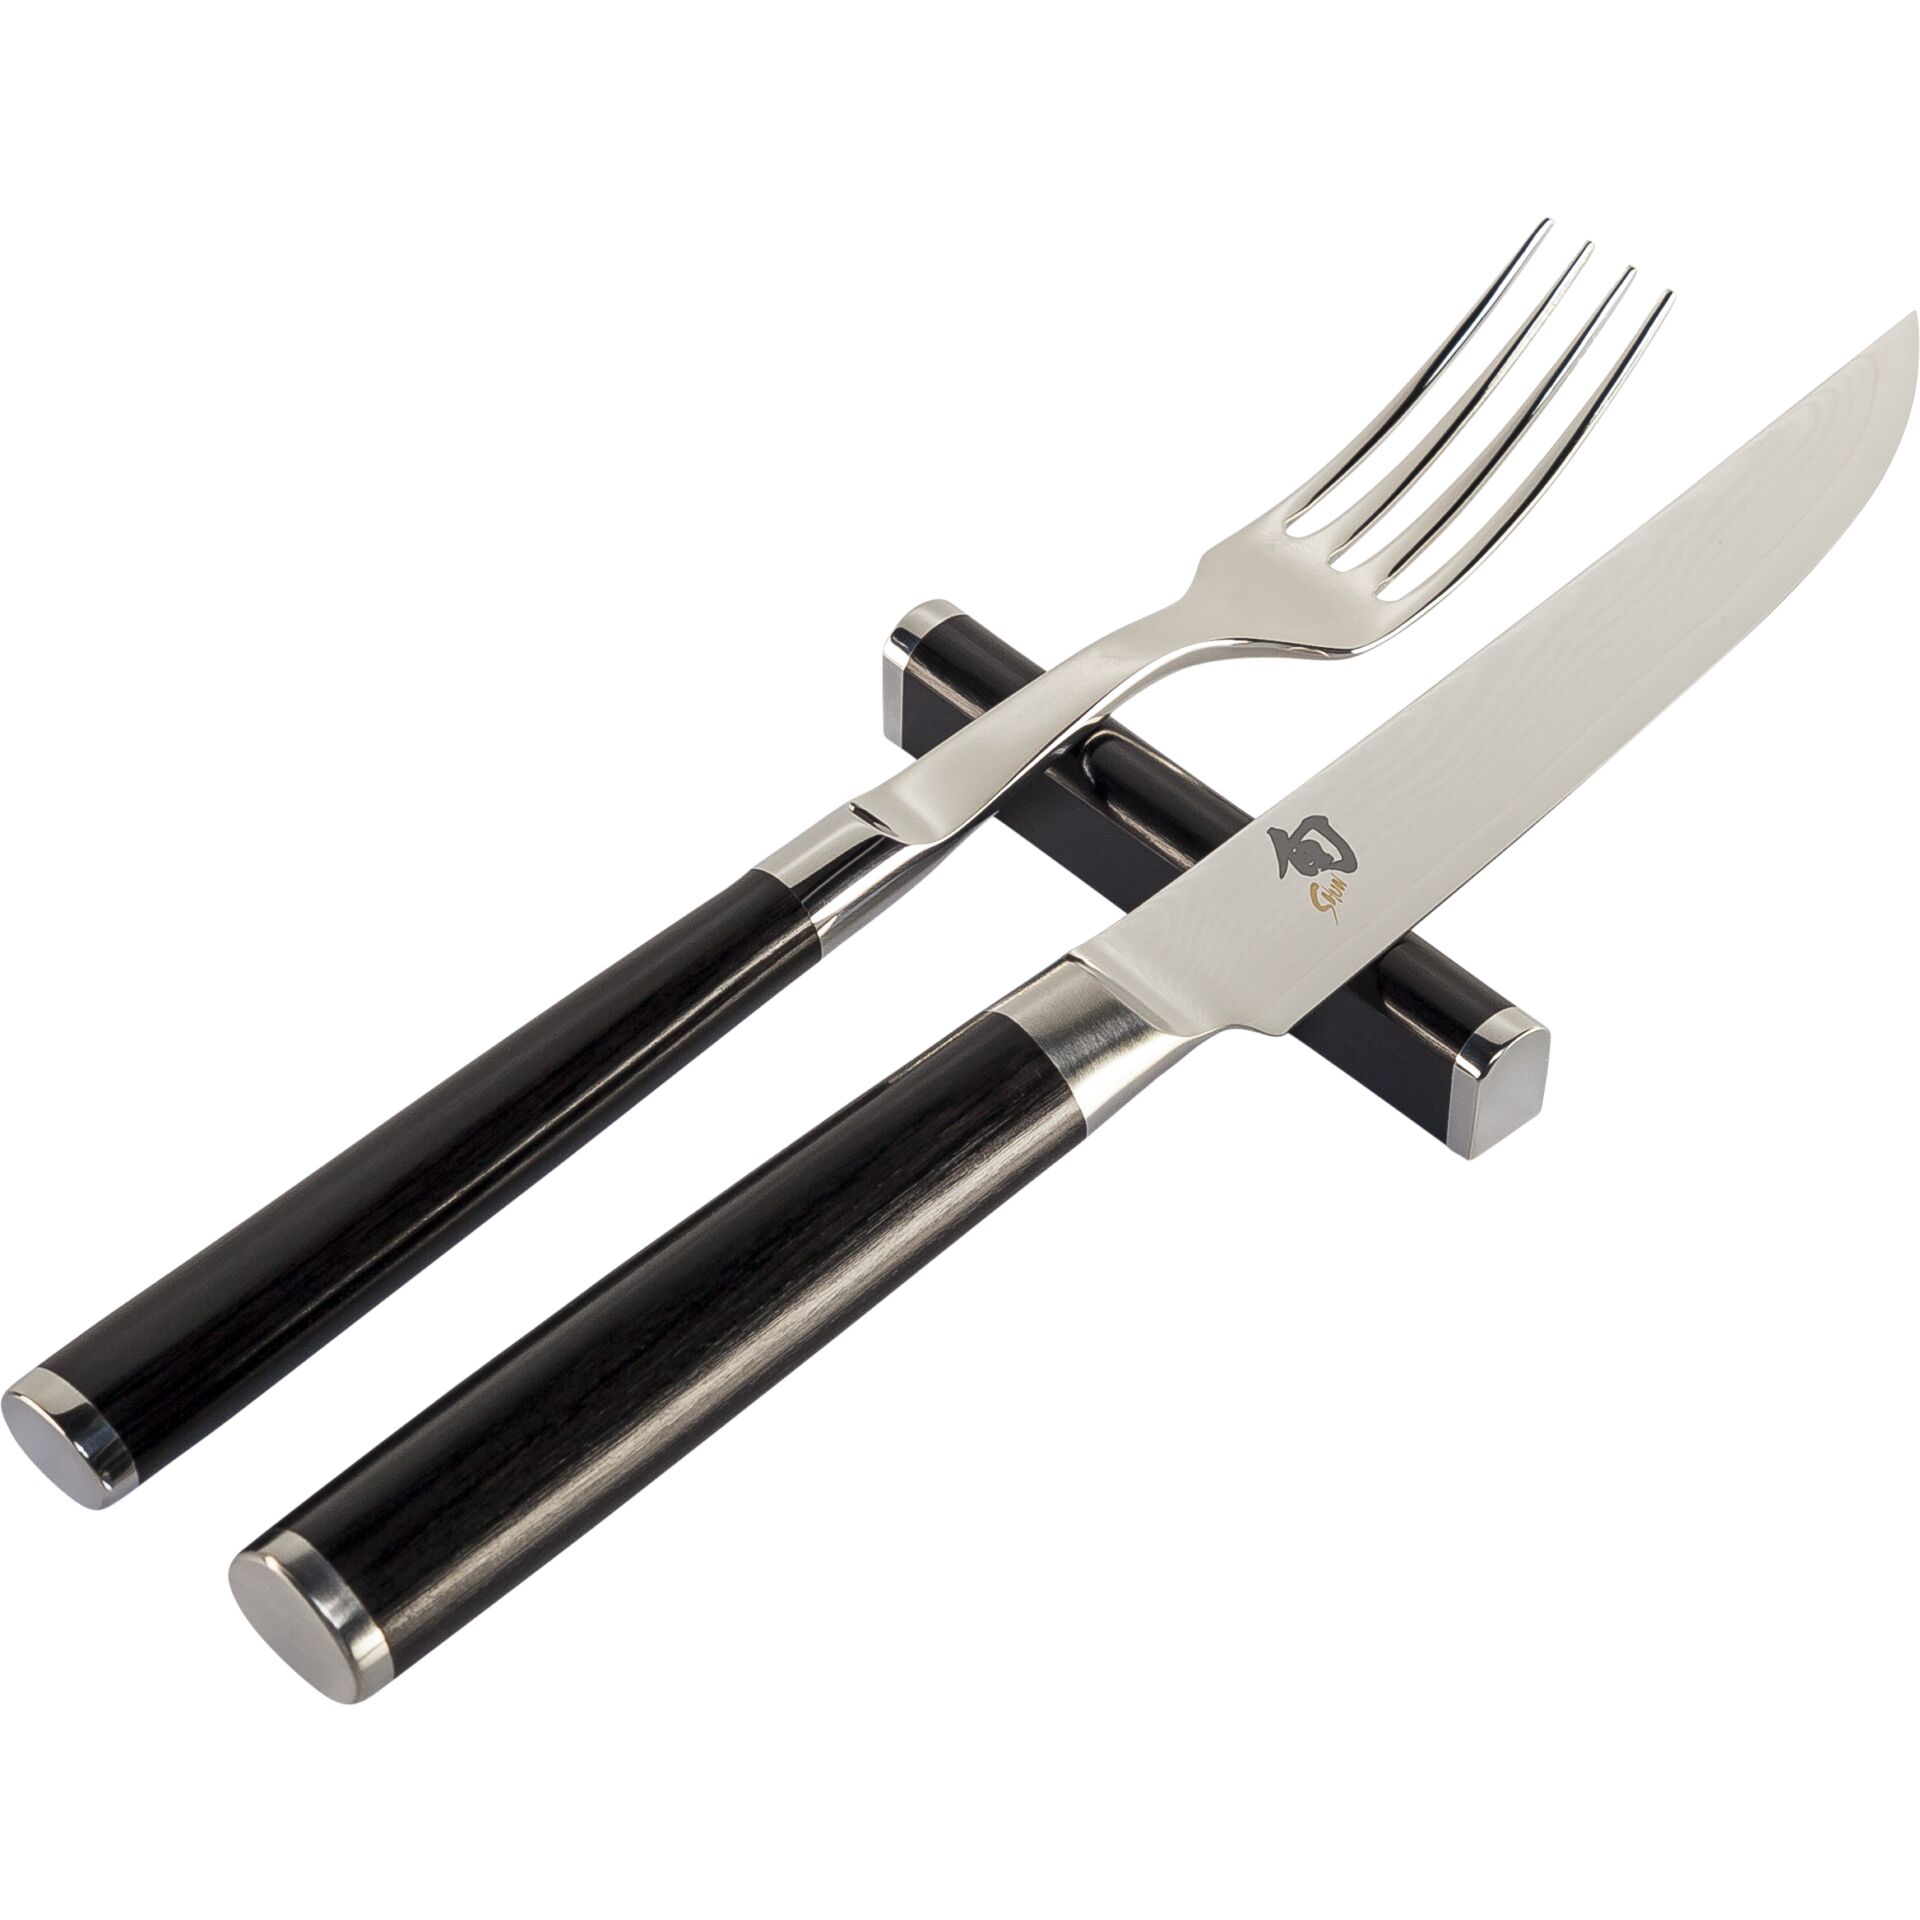 KAI Shun Cutlery  3-pcs. Fork, Knife, Knife Rest